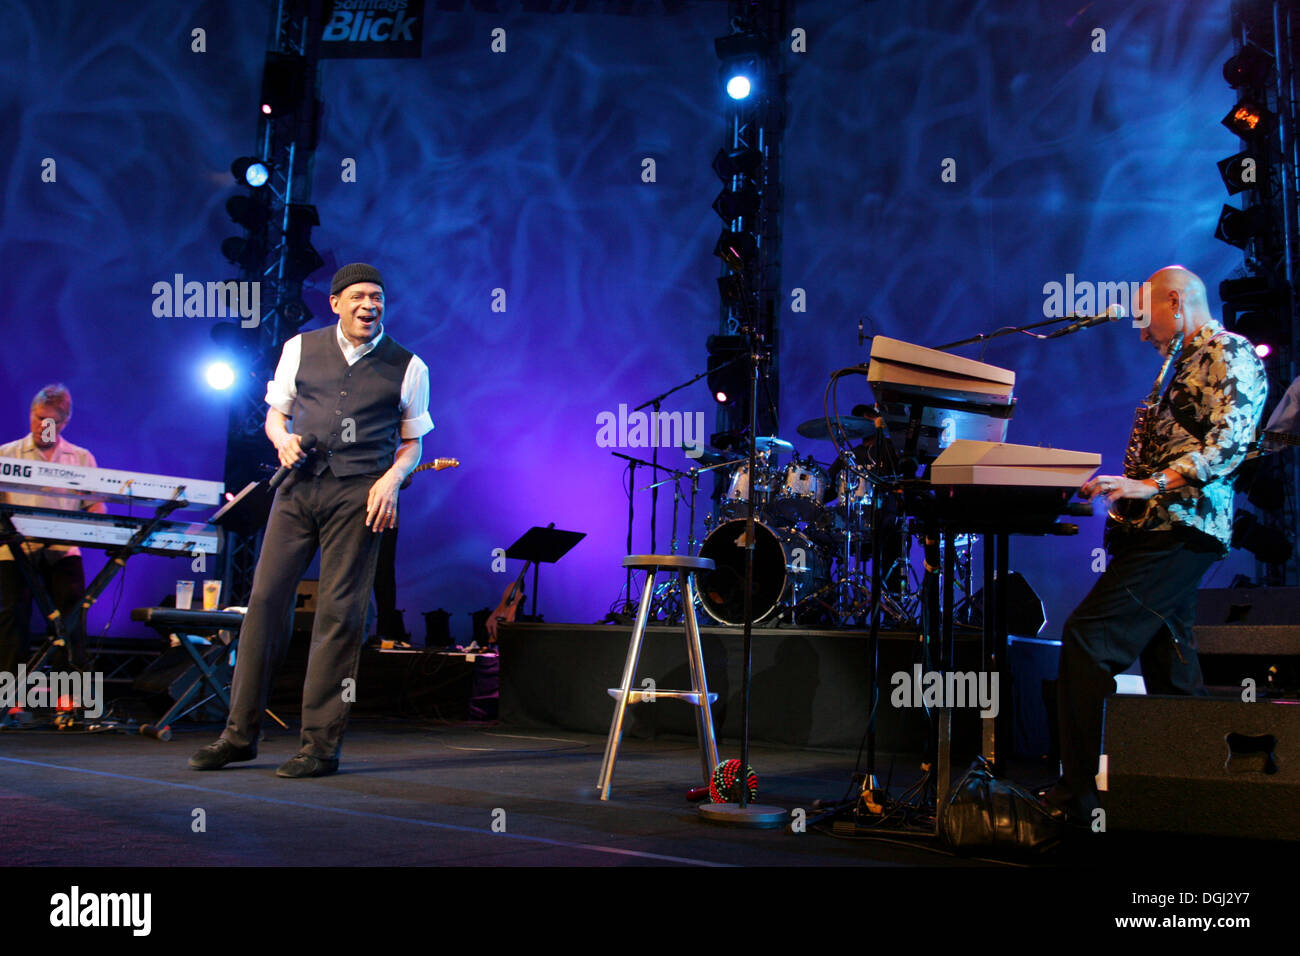 Al Jarreau, les États-Unis American jazz, pop et rhythm and blues, chanteuse et compositrice live au Blue Balls Festival dans le concert Banque D'Images